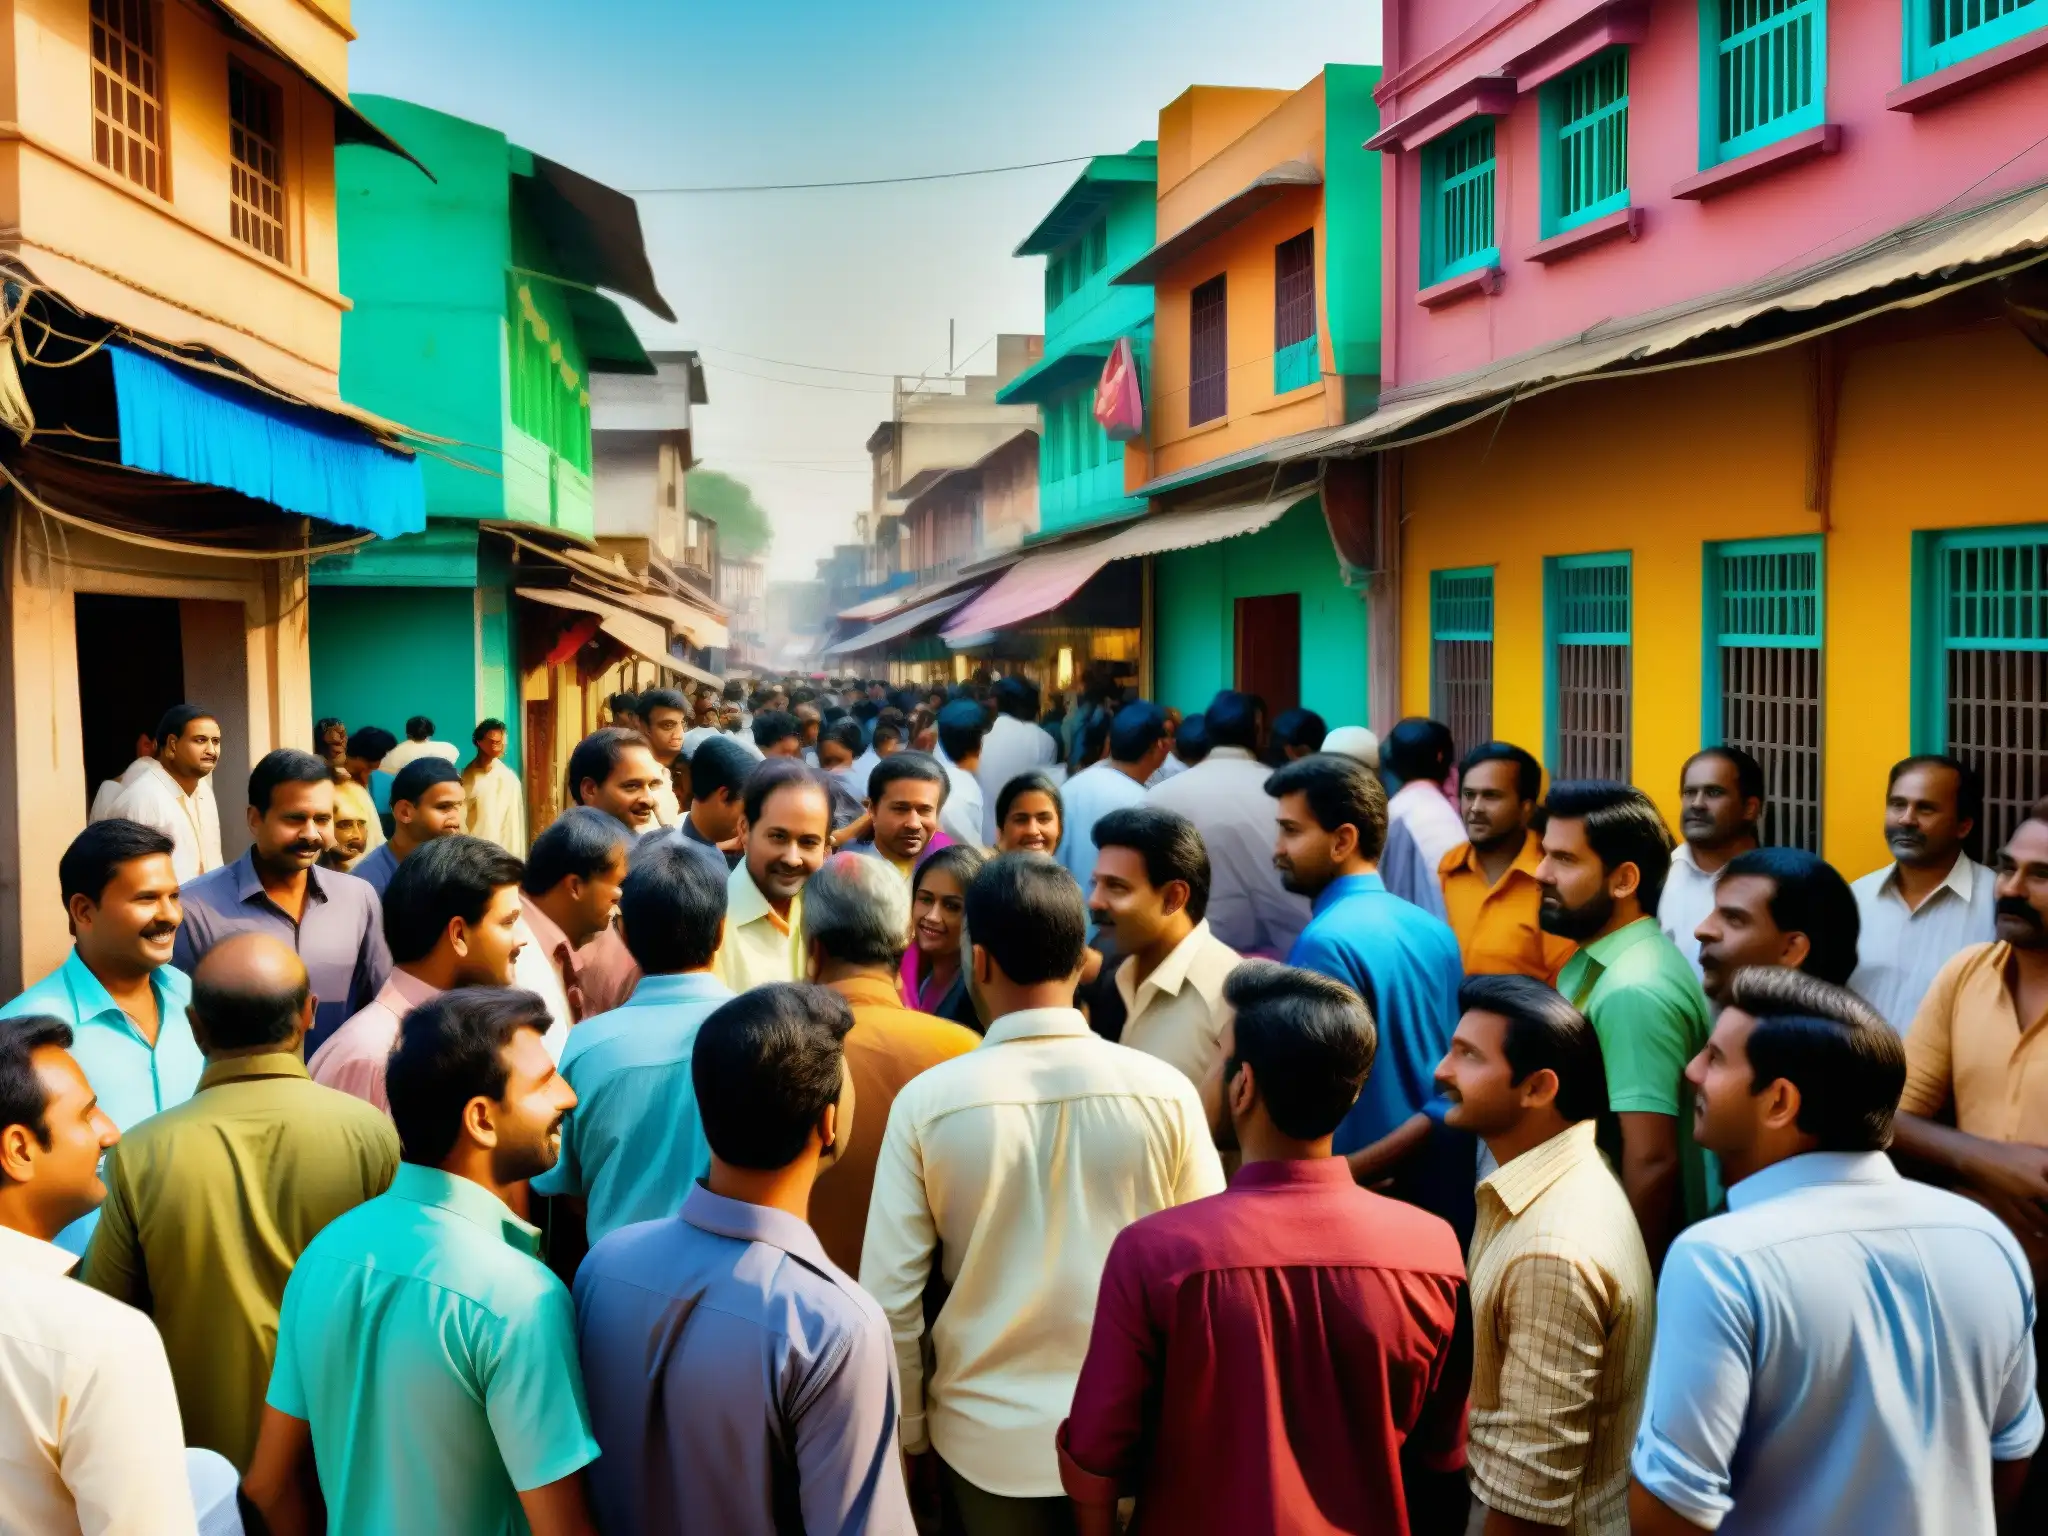 Una bulliciosa calle de una ciudad india, con edificios coloridos y personas inmersas en actividades culturales y sociales